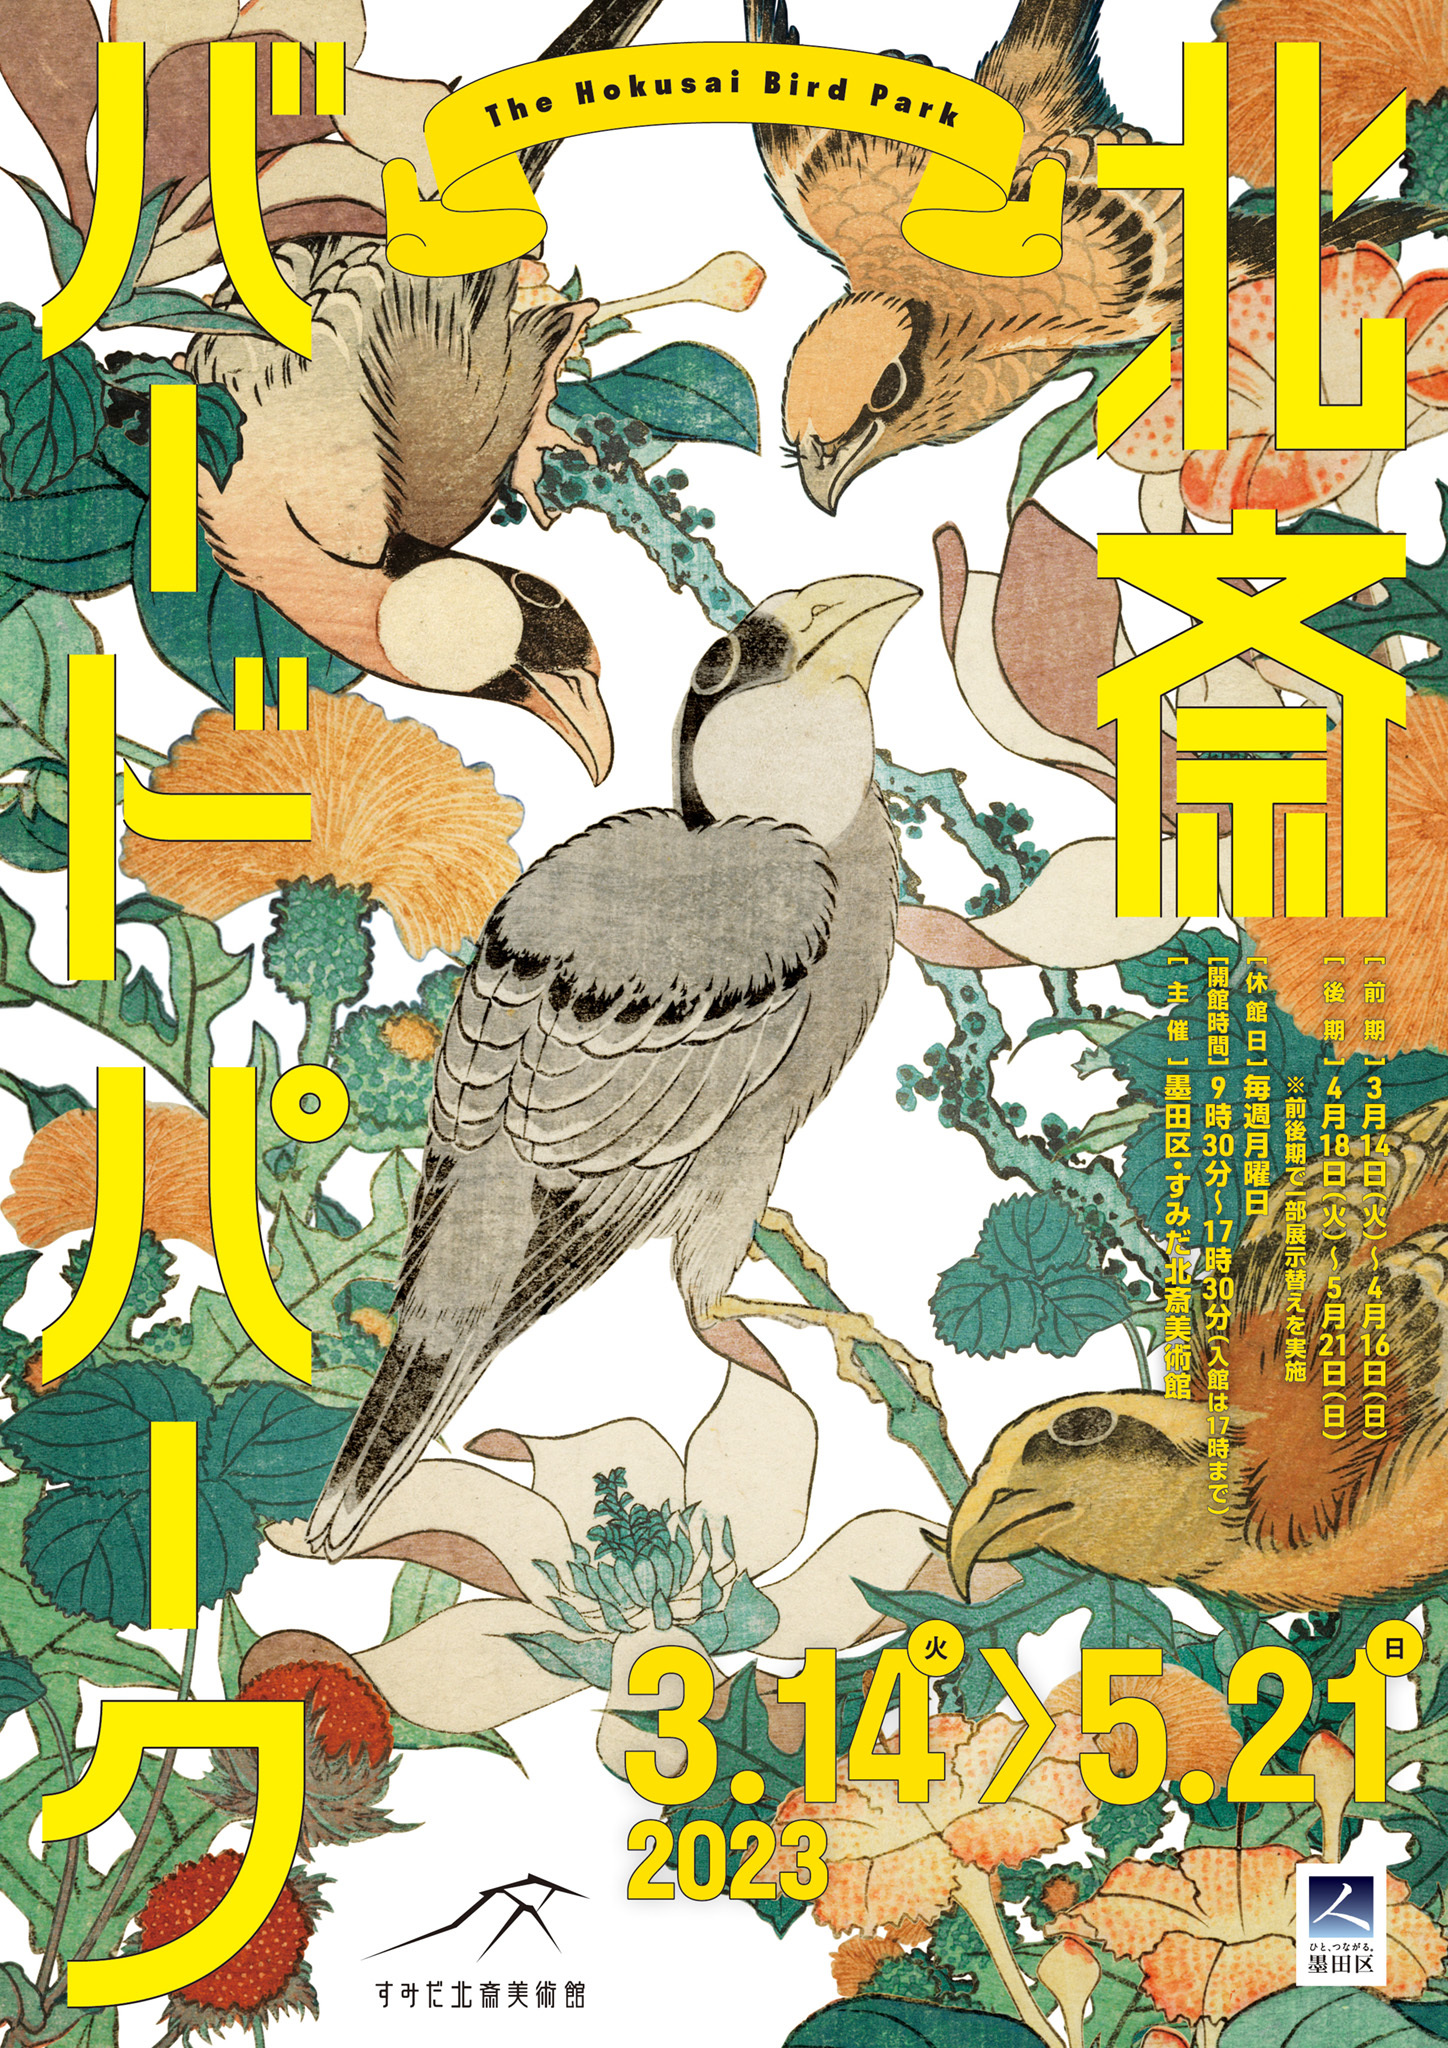 北斎一門の描いた色々な鳥たちの作品を多数展示　
企画展「北斎バードパーク」が3月14日から開催